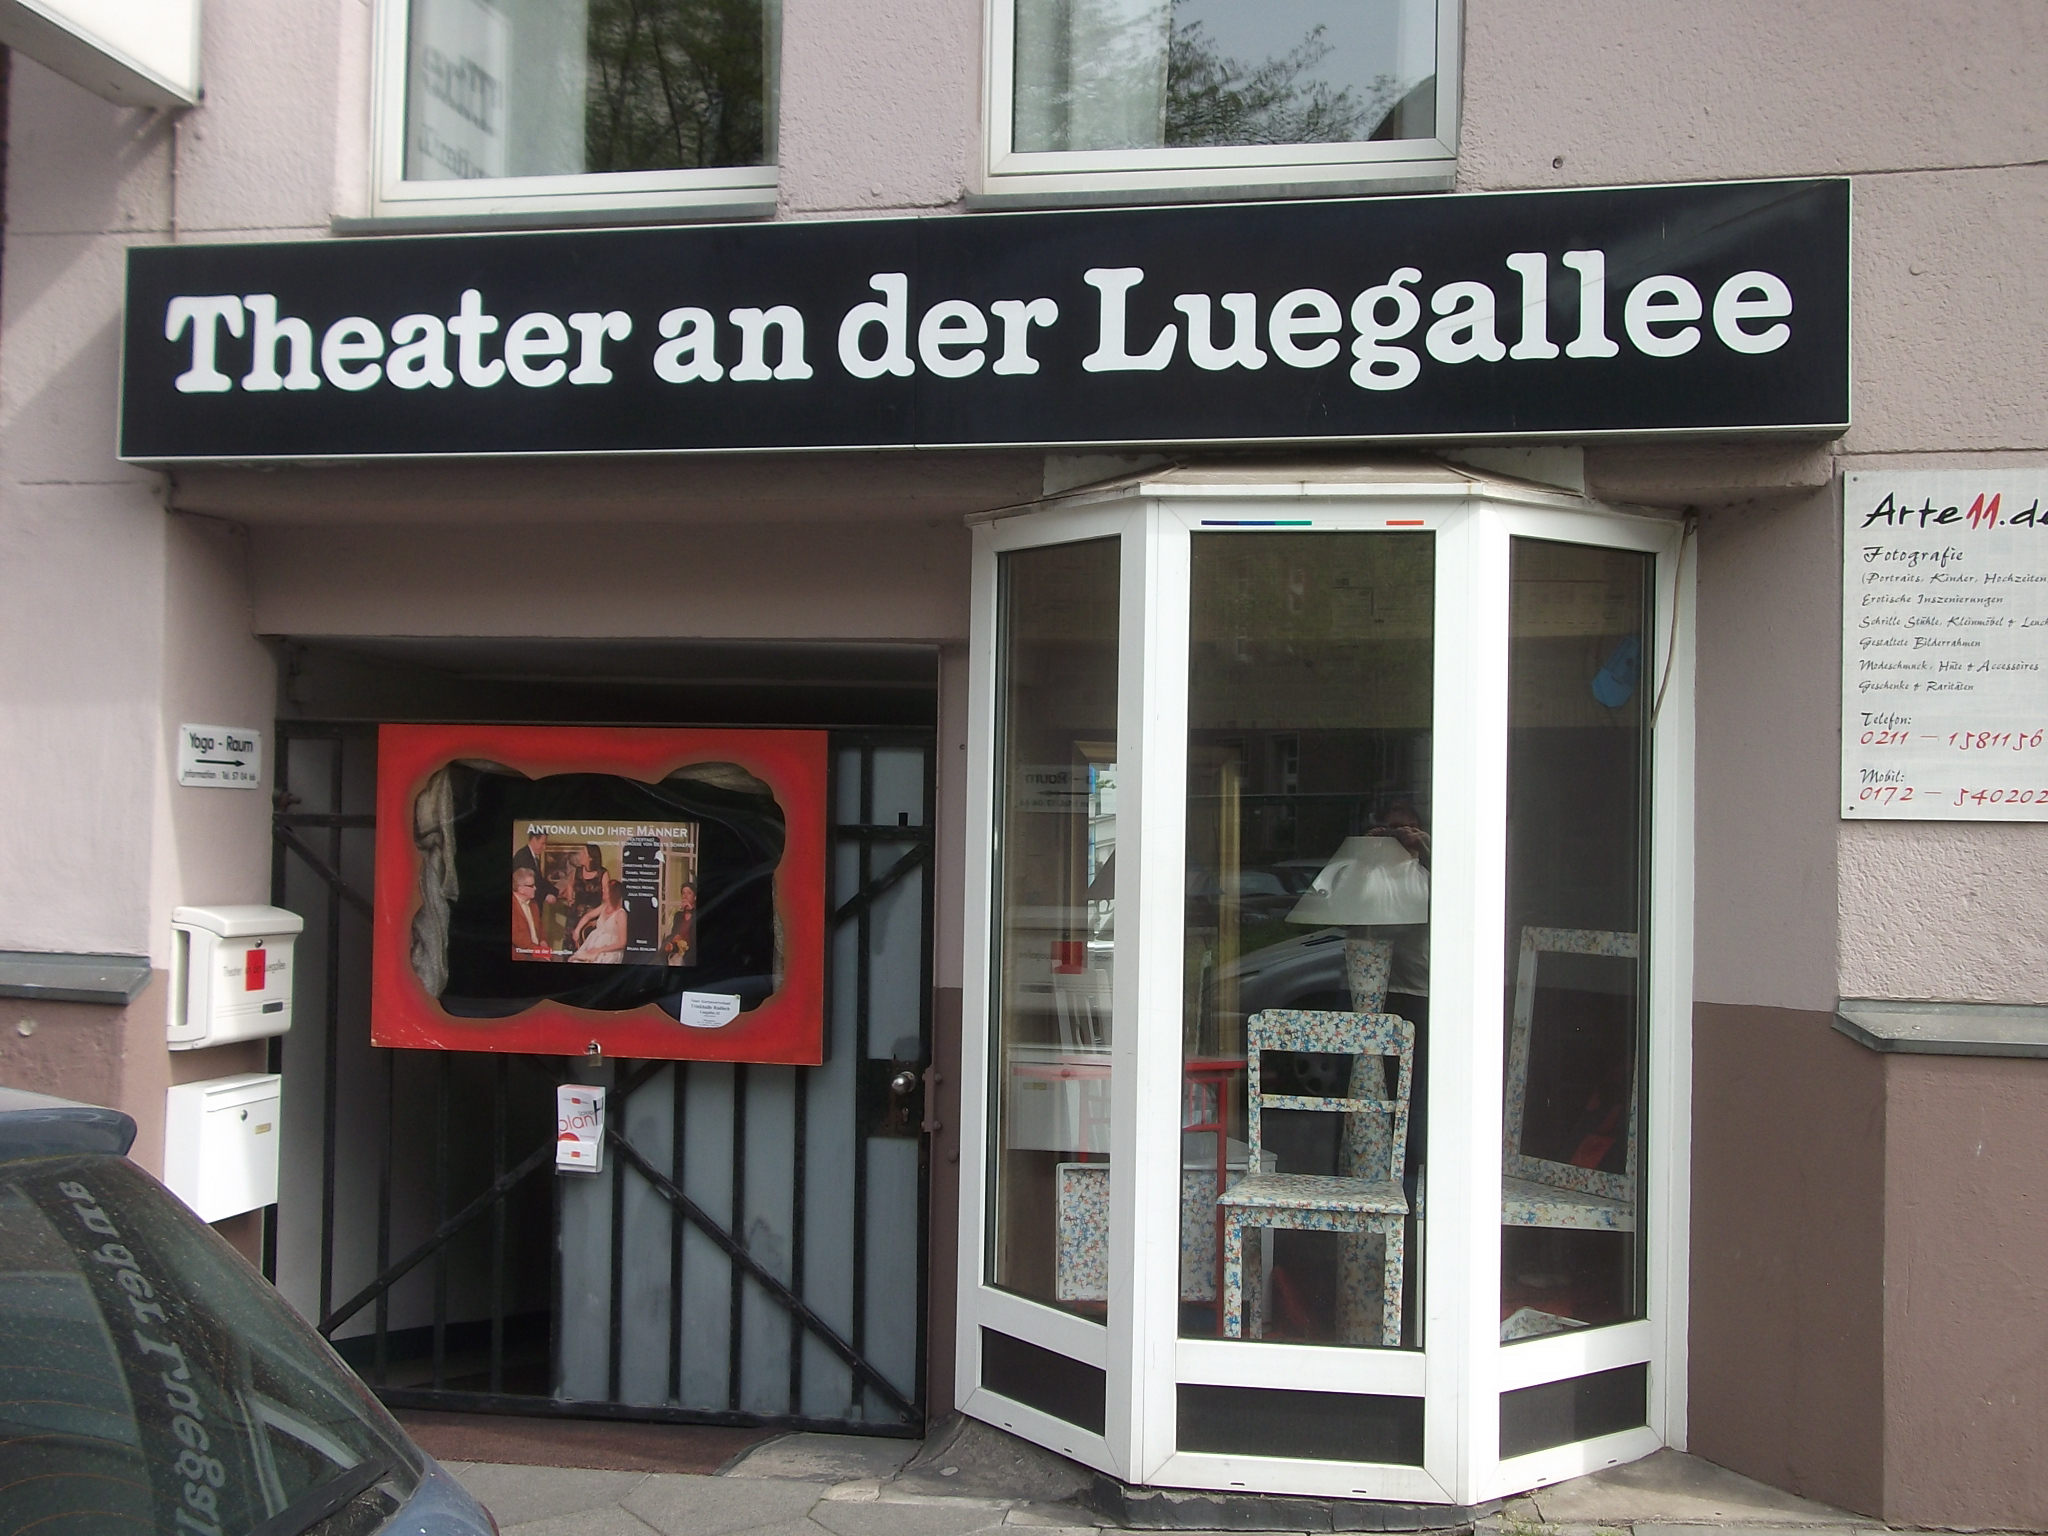 ein wenig in der Nebenstraße versteckt: Das Theater an der Luegallee